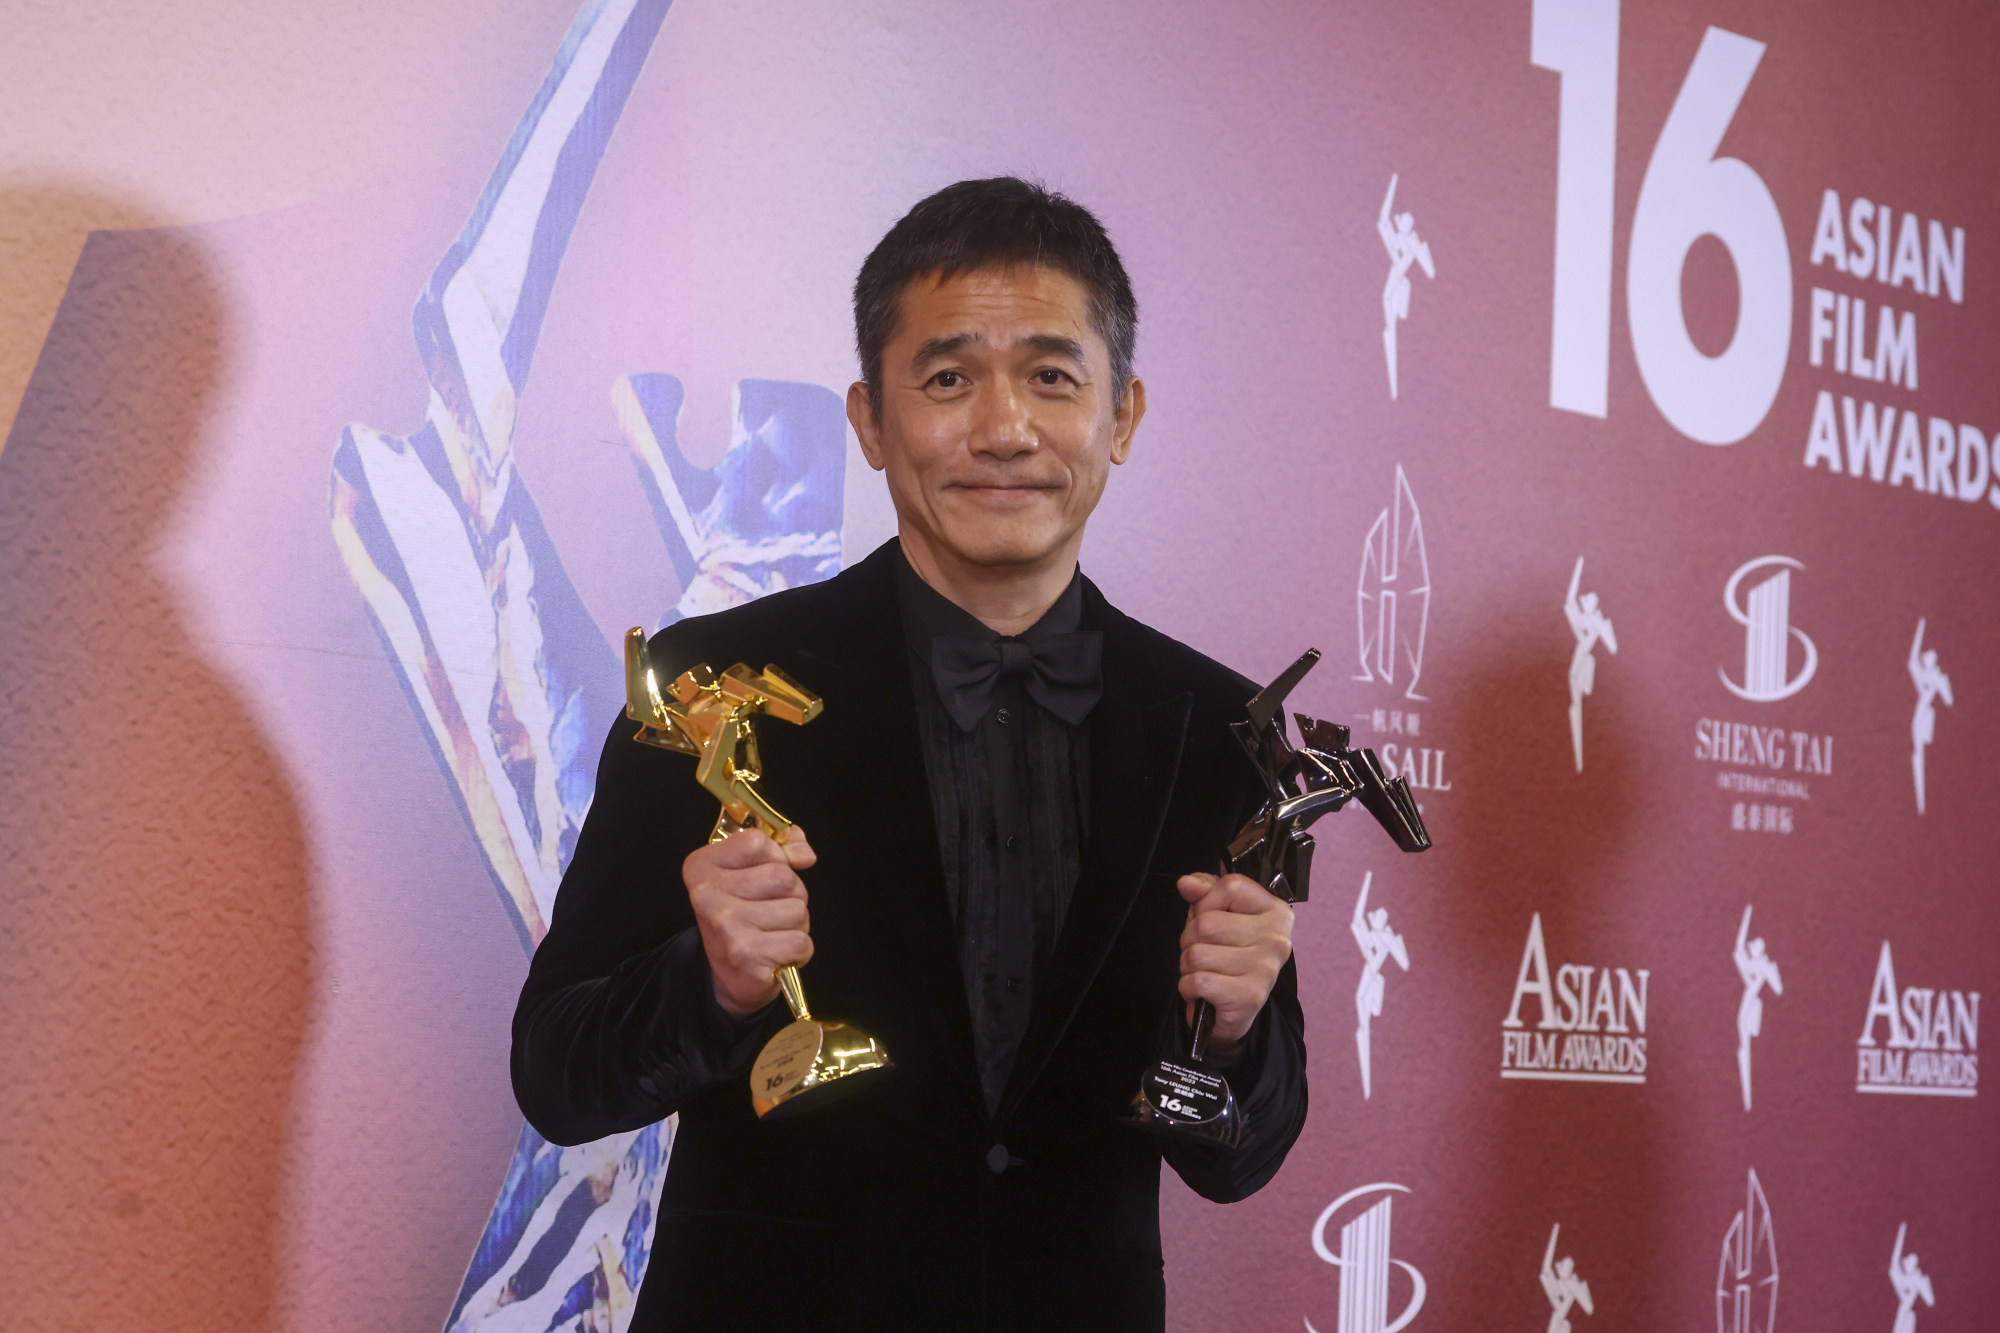 Lương Triều Vỹ chụp ảnh cùng giải nam diễn viên chính xuất sắc nhất và giải đóng góp đặc biệt cho ‘Nơi gió thổi’ tại Giải thưởng Điện ảnh Châu Á lần thứ 16 được tổ chức tại Hồng Kông vào ngày 12 tháng 3. Ảnh: Dickson Lee